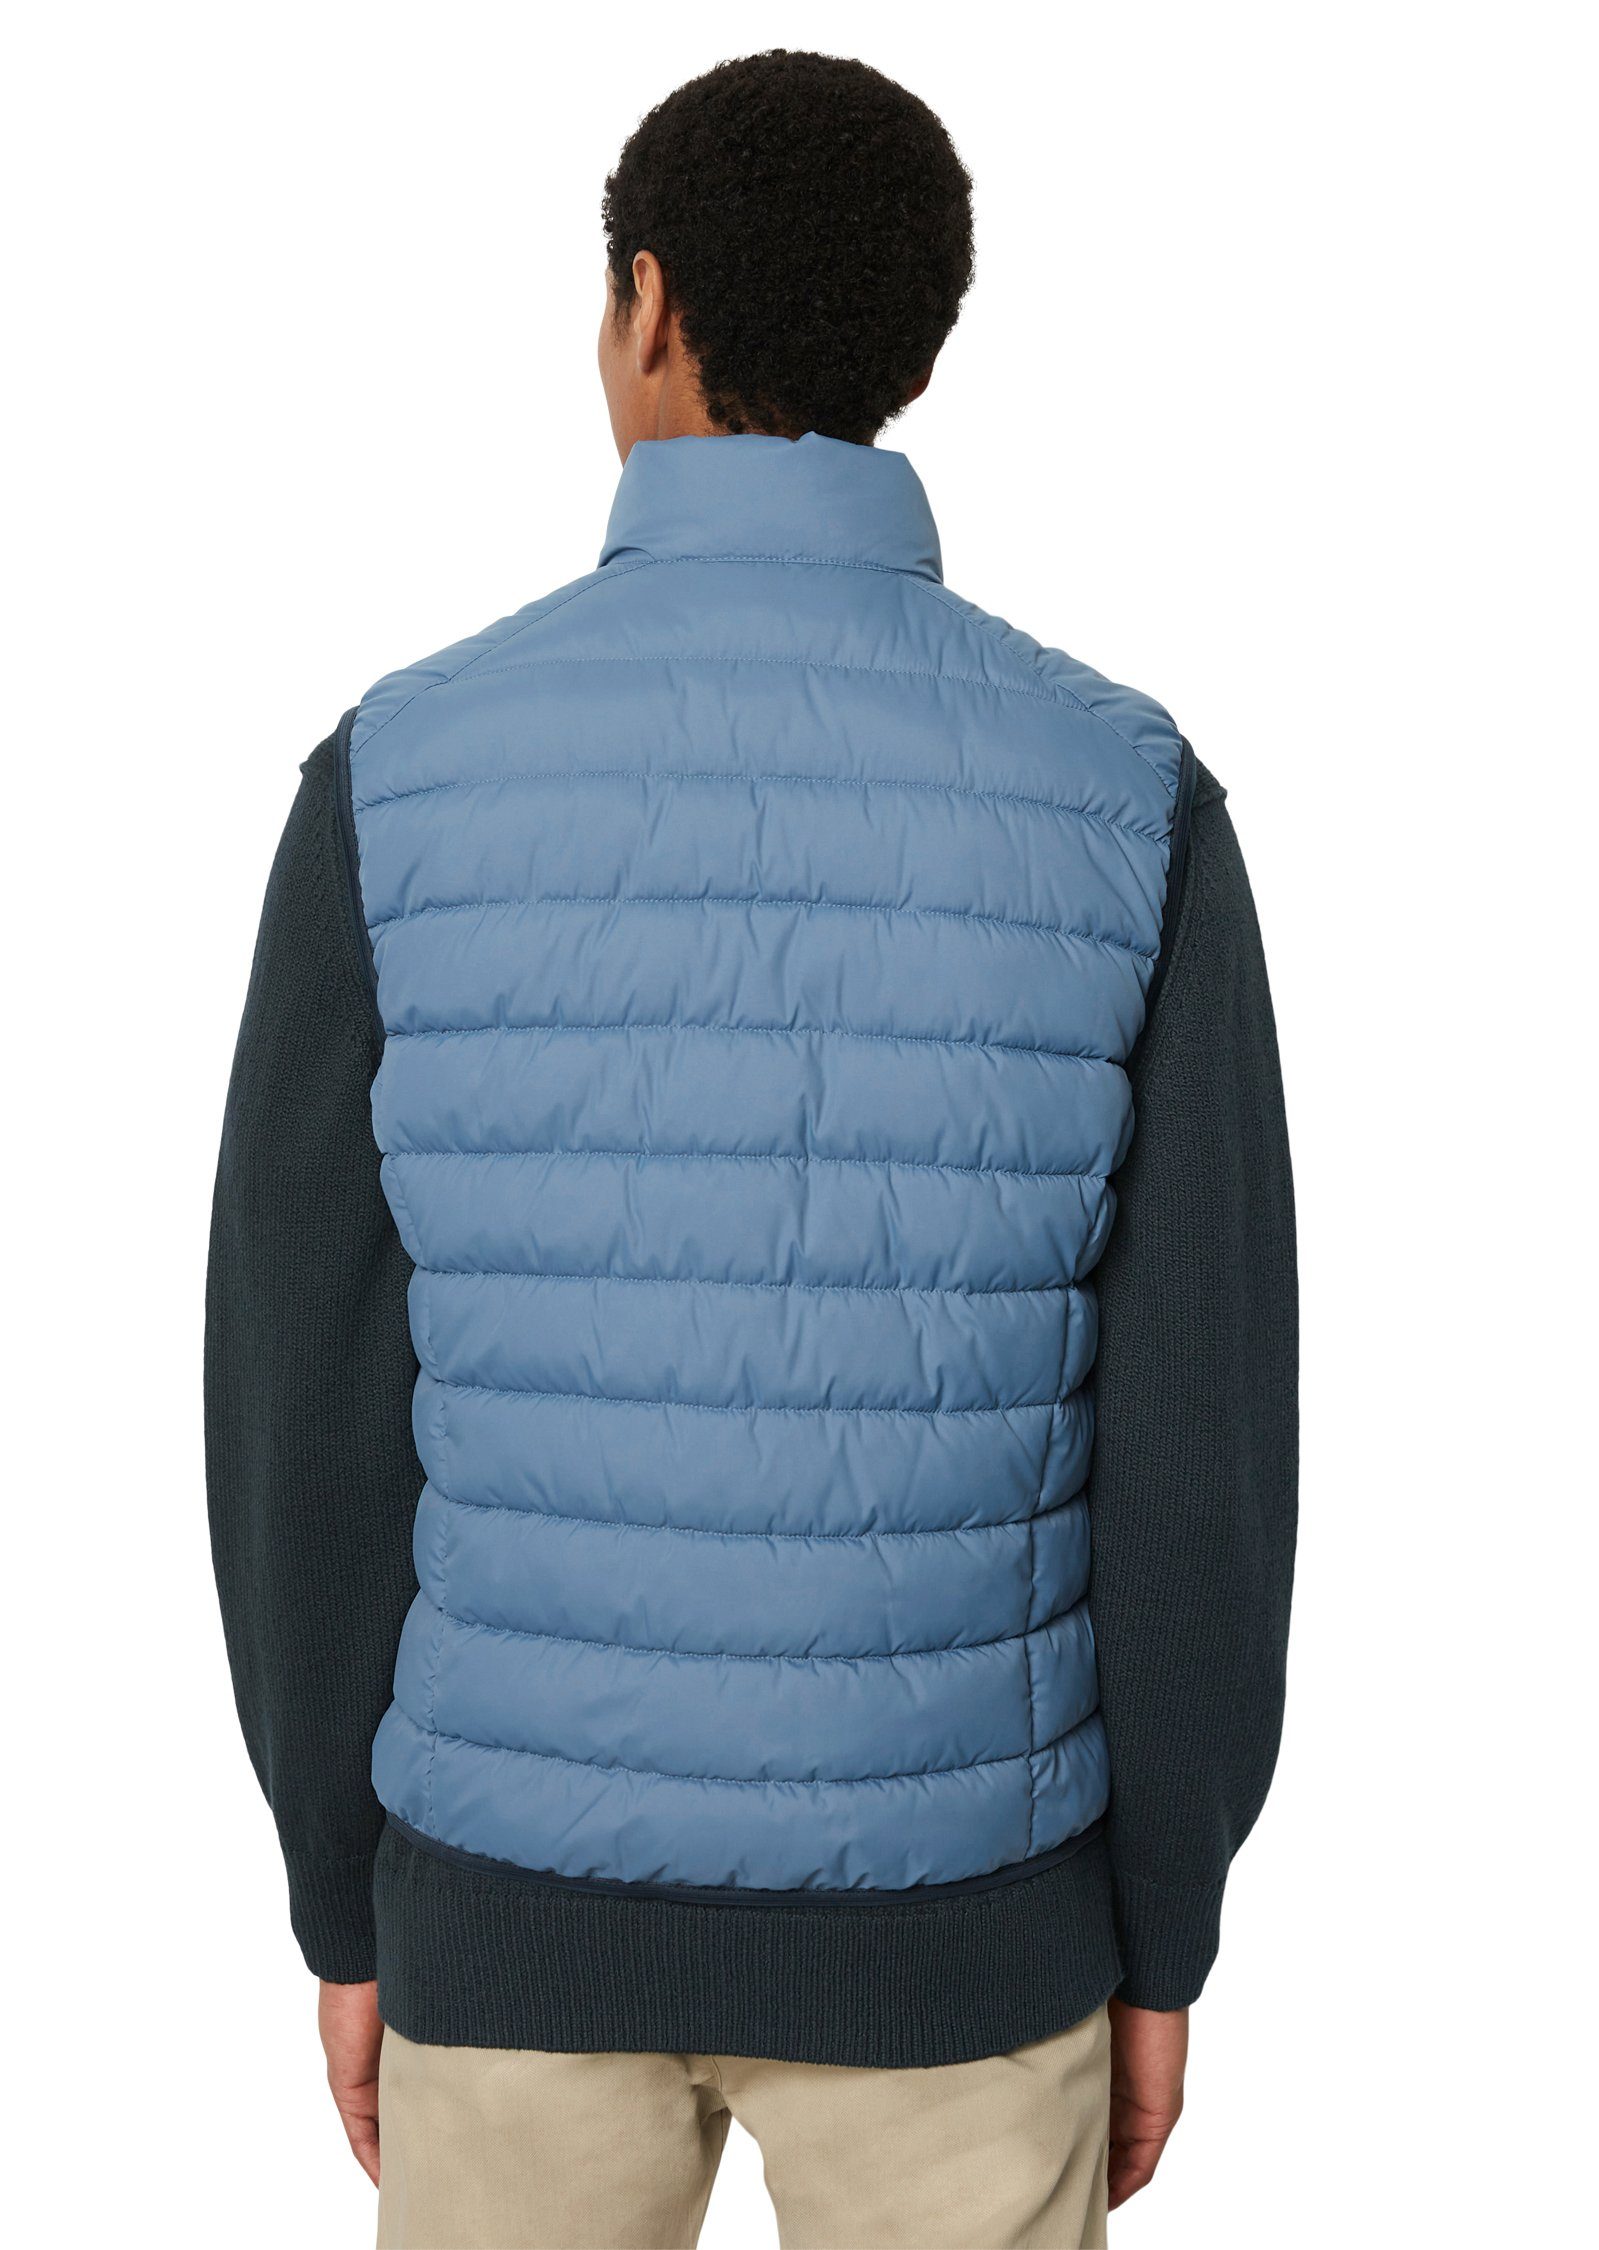 Marc O'Polo Steppweste Vest, sdnd, Oberfläche wasserabweisender wedgewood mit collar stand-up